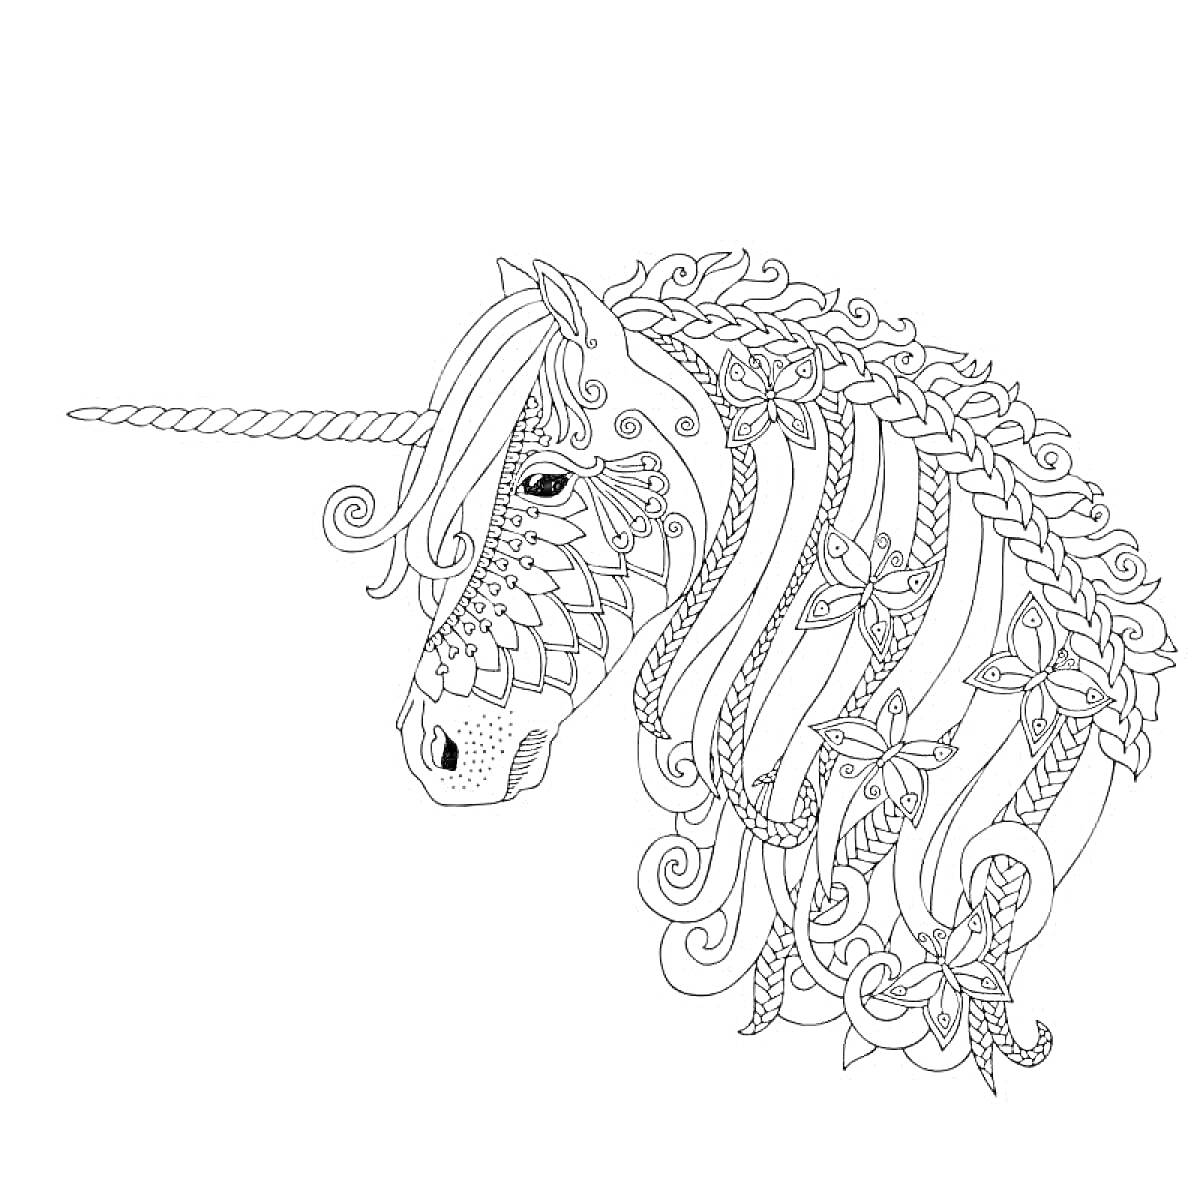 Раскраска Единорог с детализированной гривой, украшенной цветами и узорами